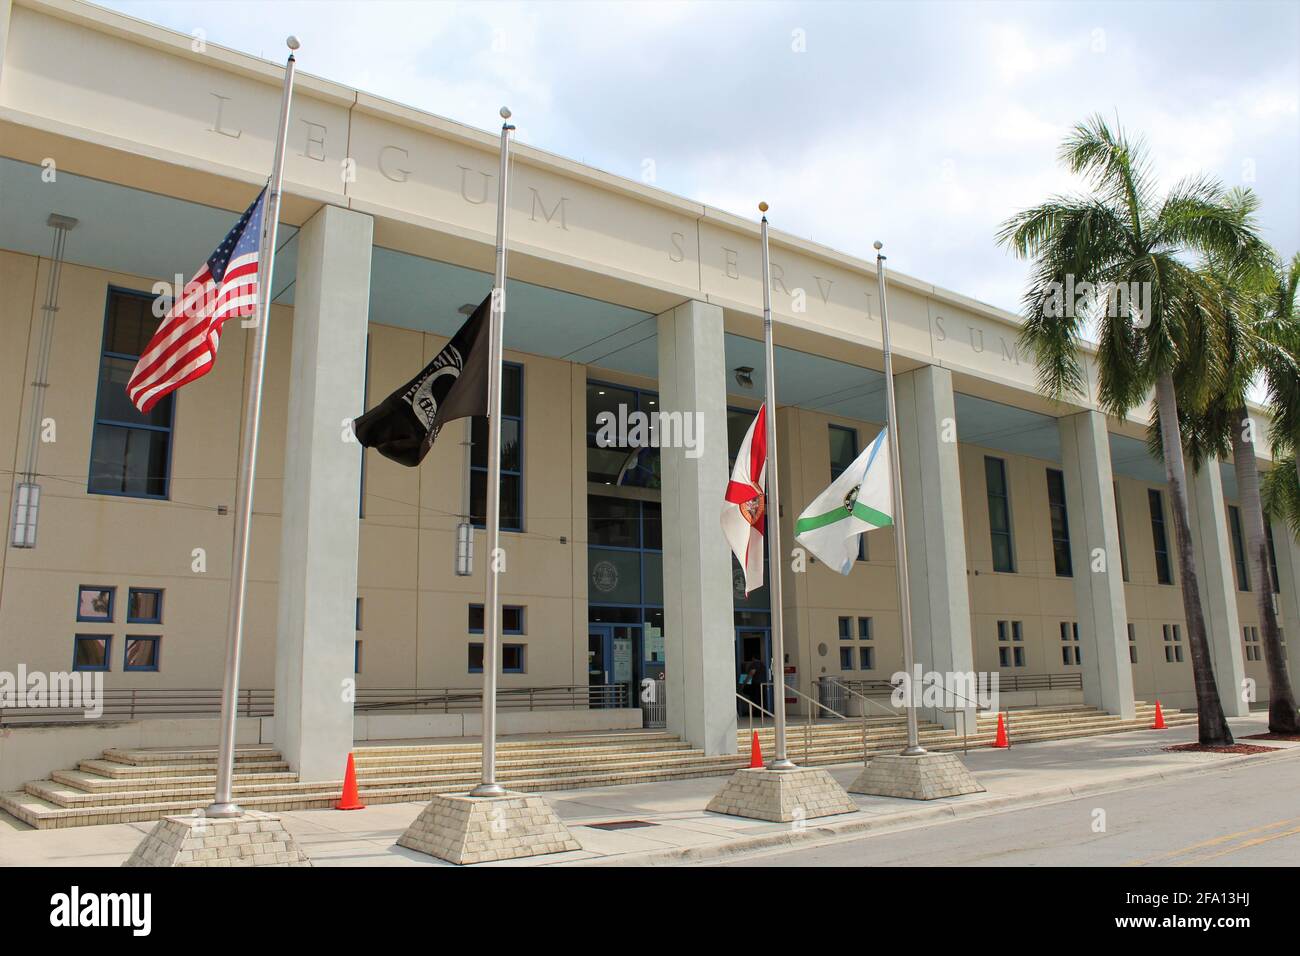 Extérieur du tribunal de district de Hialeah dans la ville de Hialeah. Drapeaux et texte gravés sur le bâtiment lecture Legum Servi Sum. Miami-Dade Greffier des tribunaux Banque D'Images